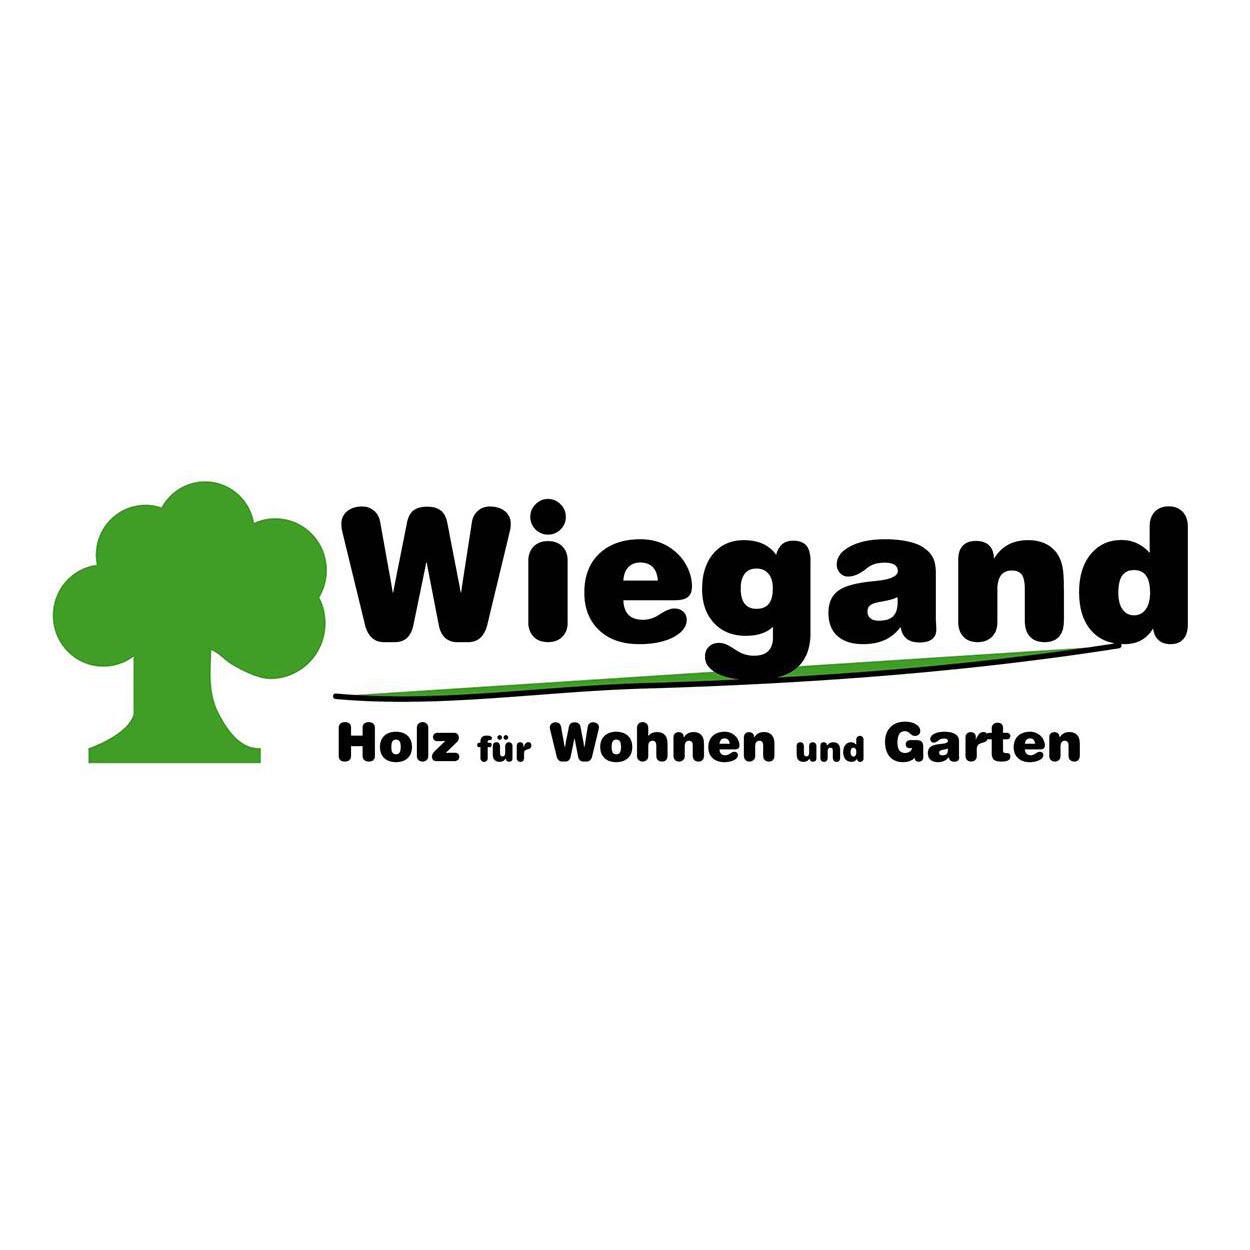 Holz Wiegand in Würzburg - Logo